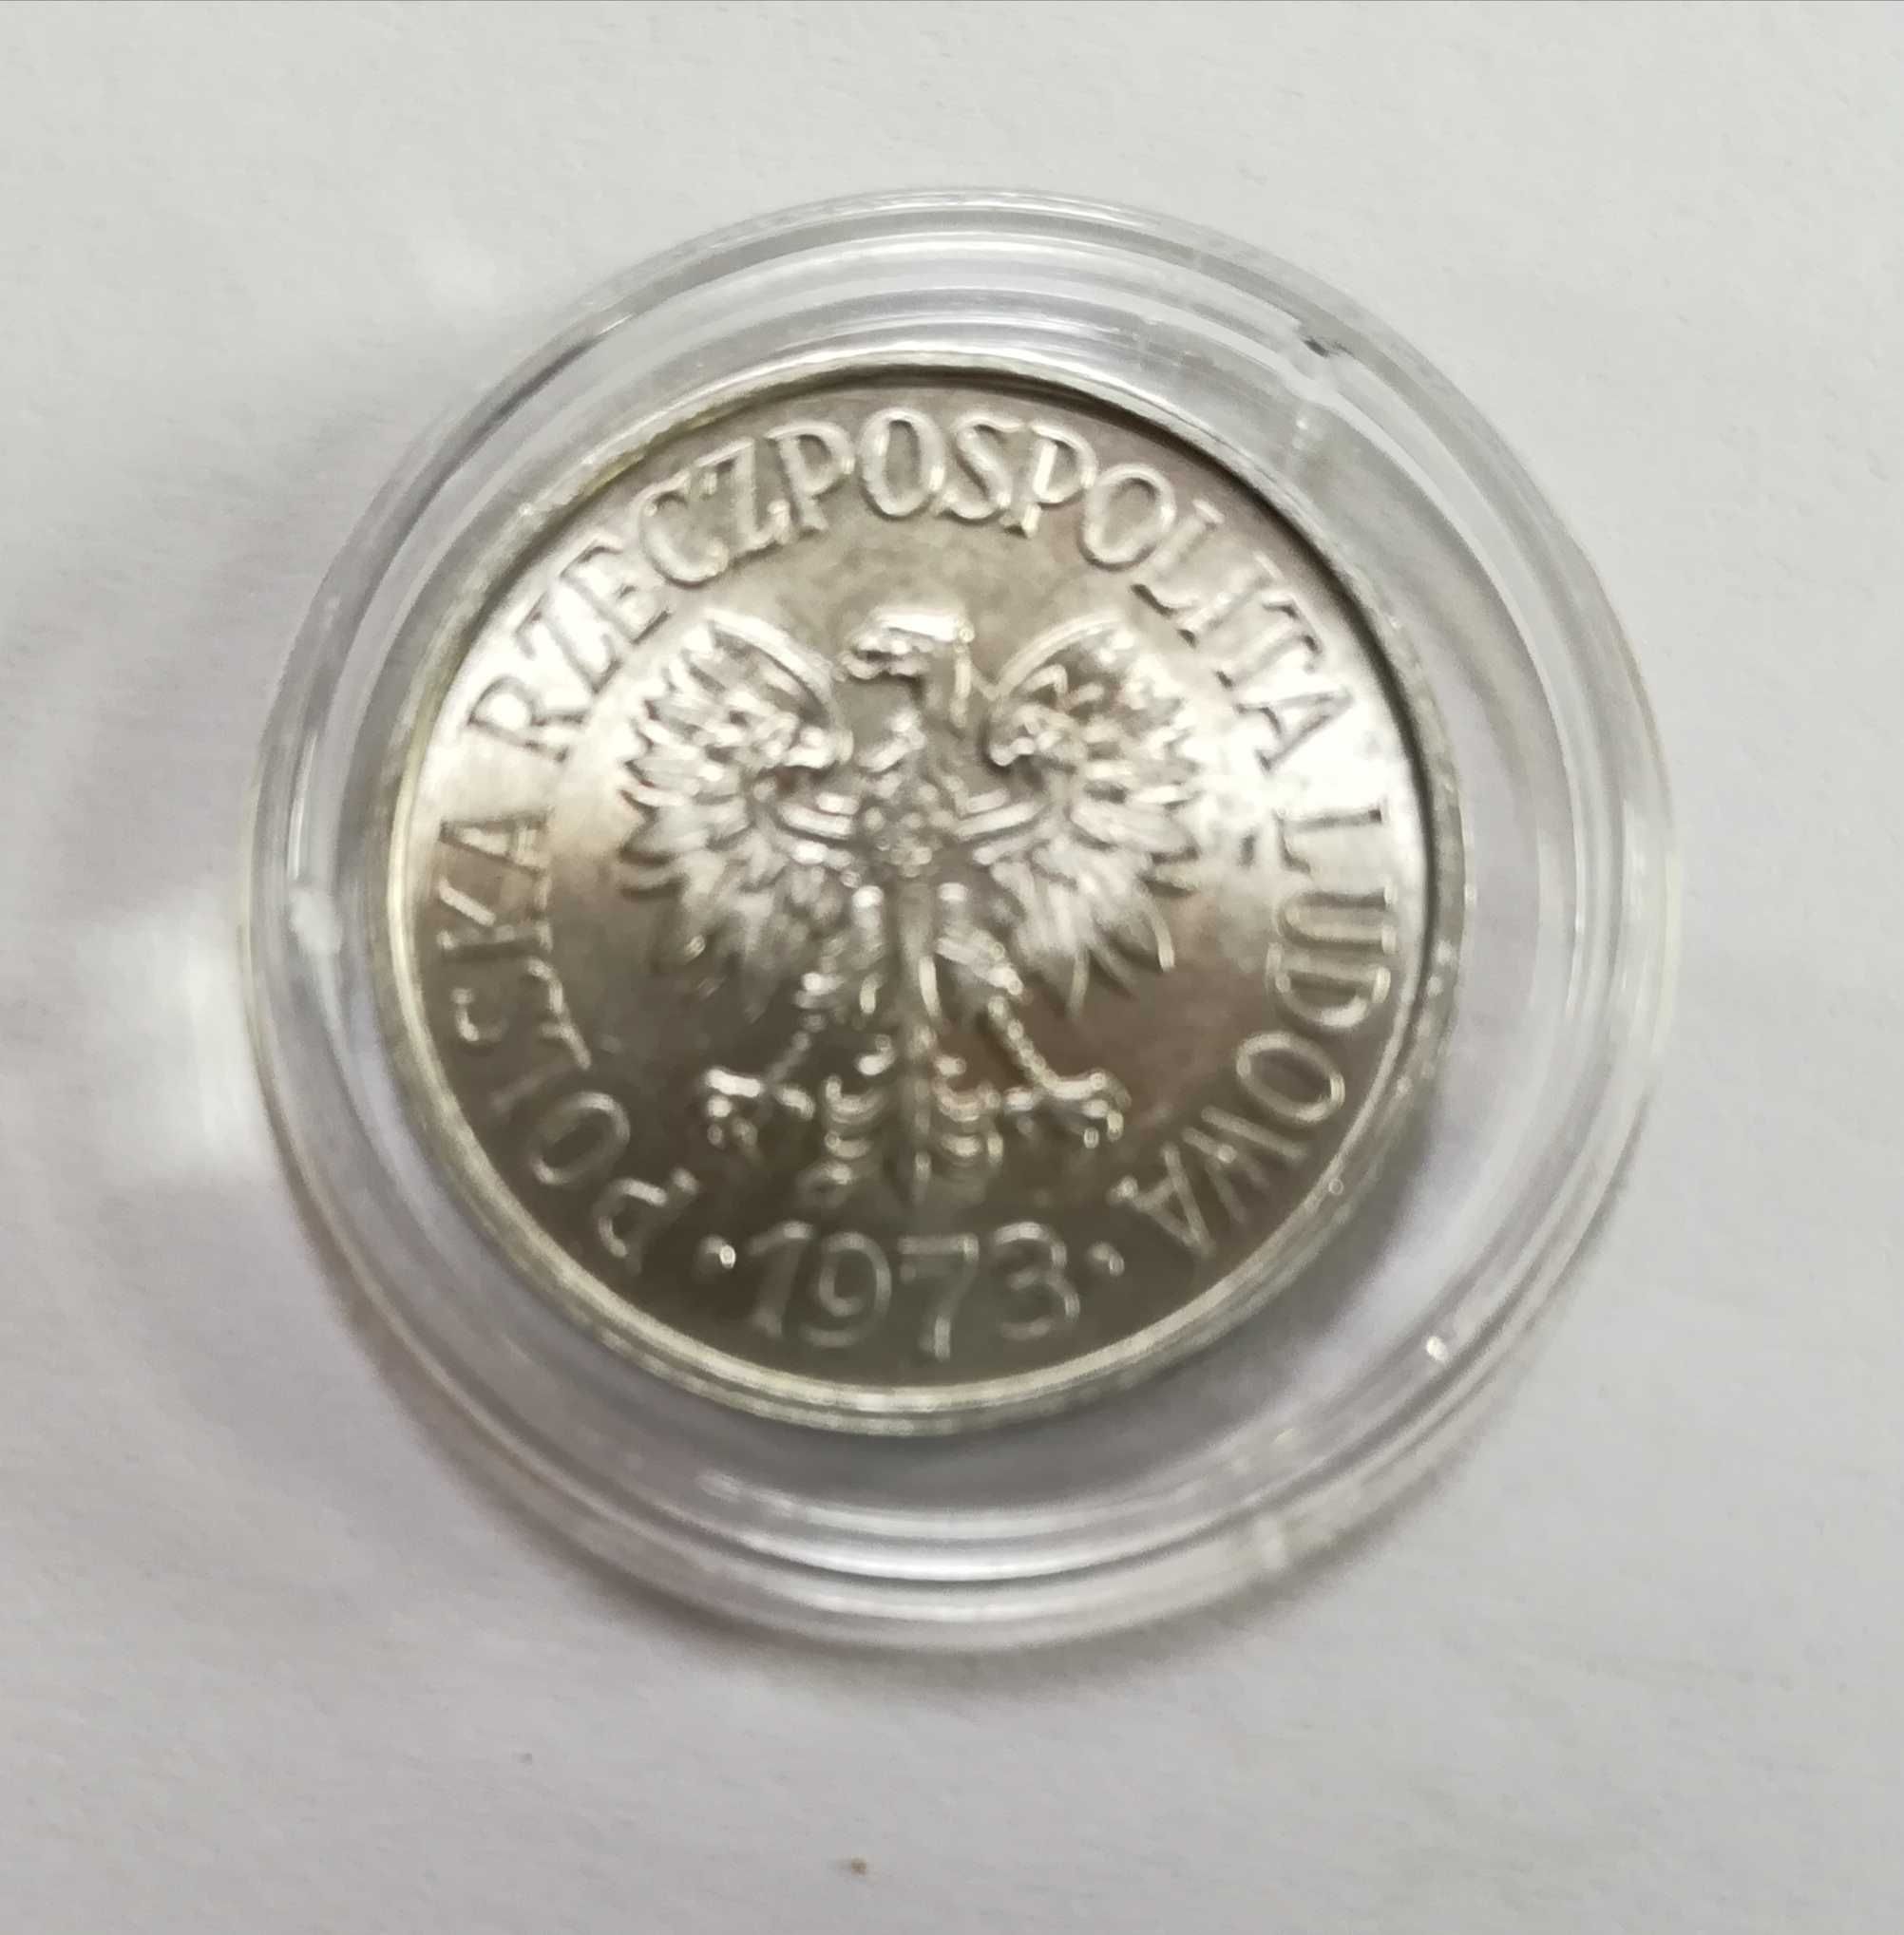 Moneta 20 gr z 1973 r, stan menniczy. Bez znaku mennicy.